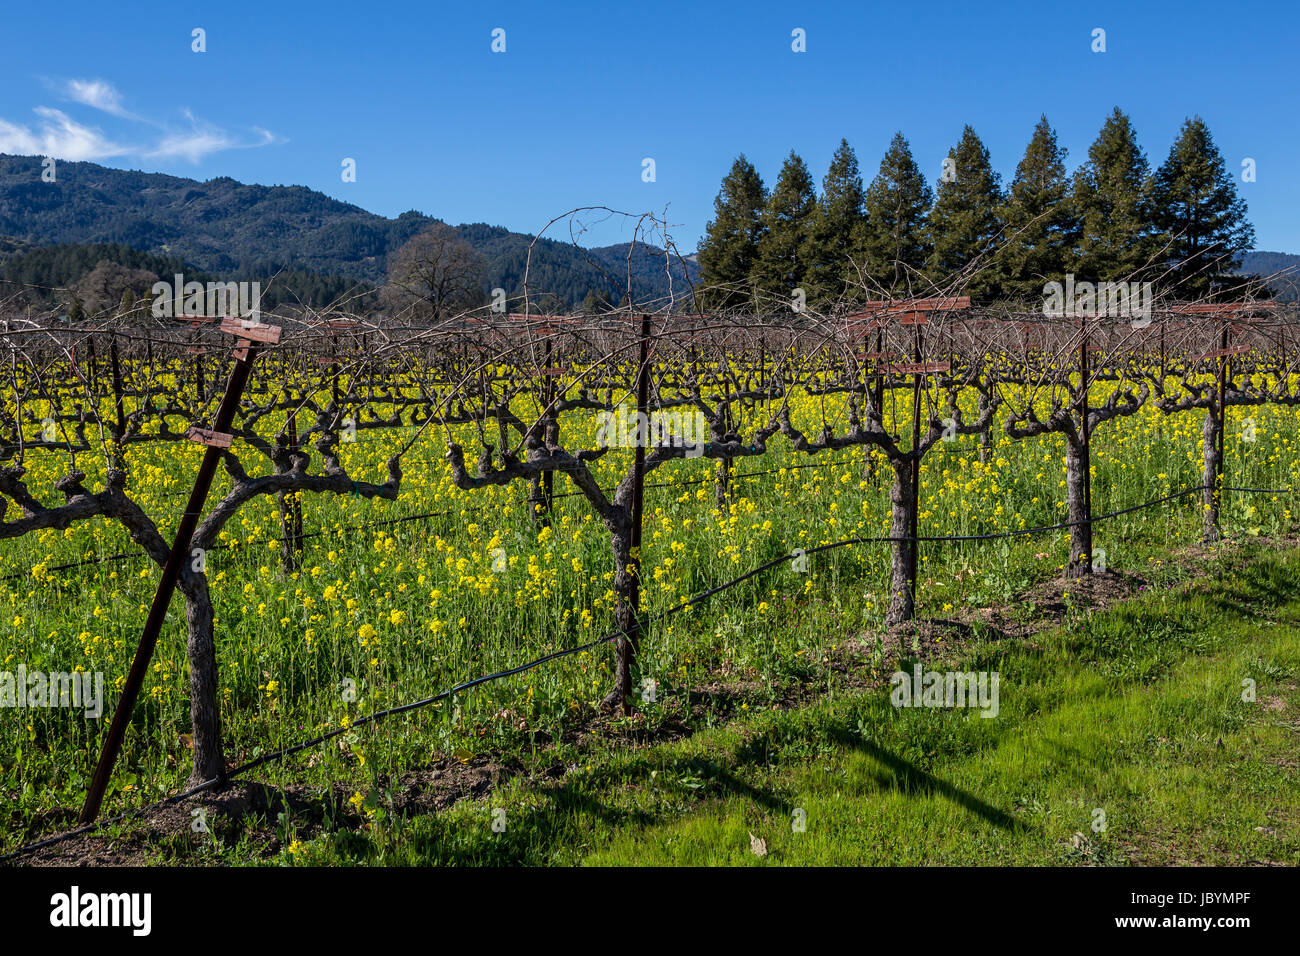 Viñedos de uva, viñedos, Viñedos, vista desde el salón, bodega, Santa Elena, Napa Valley, el condado de Napa, California, Estados Unidos, América del Norte Foto de stock